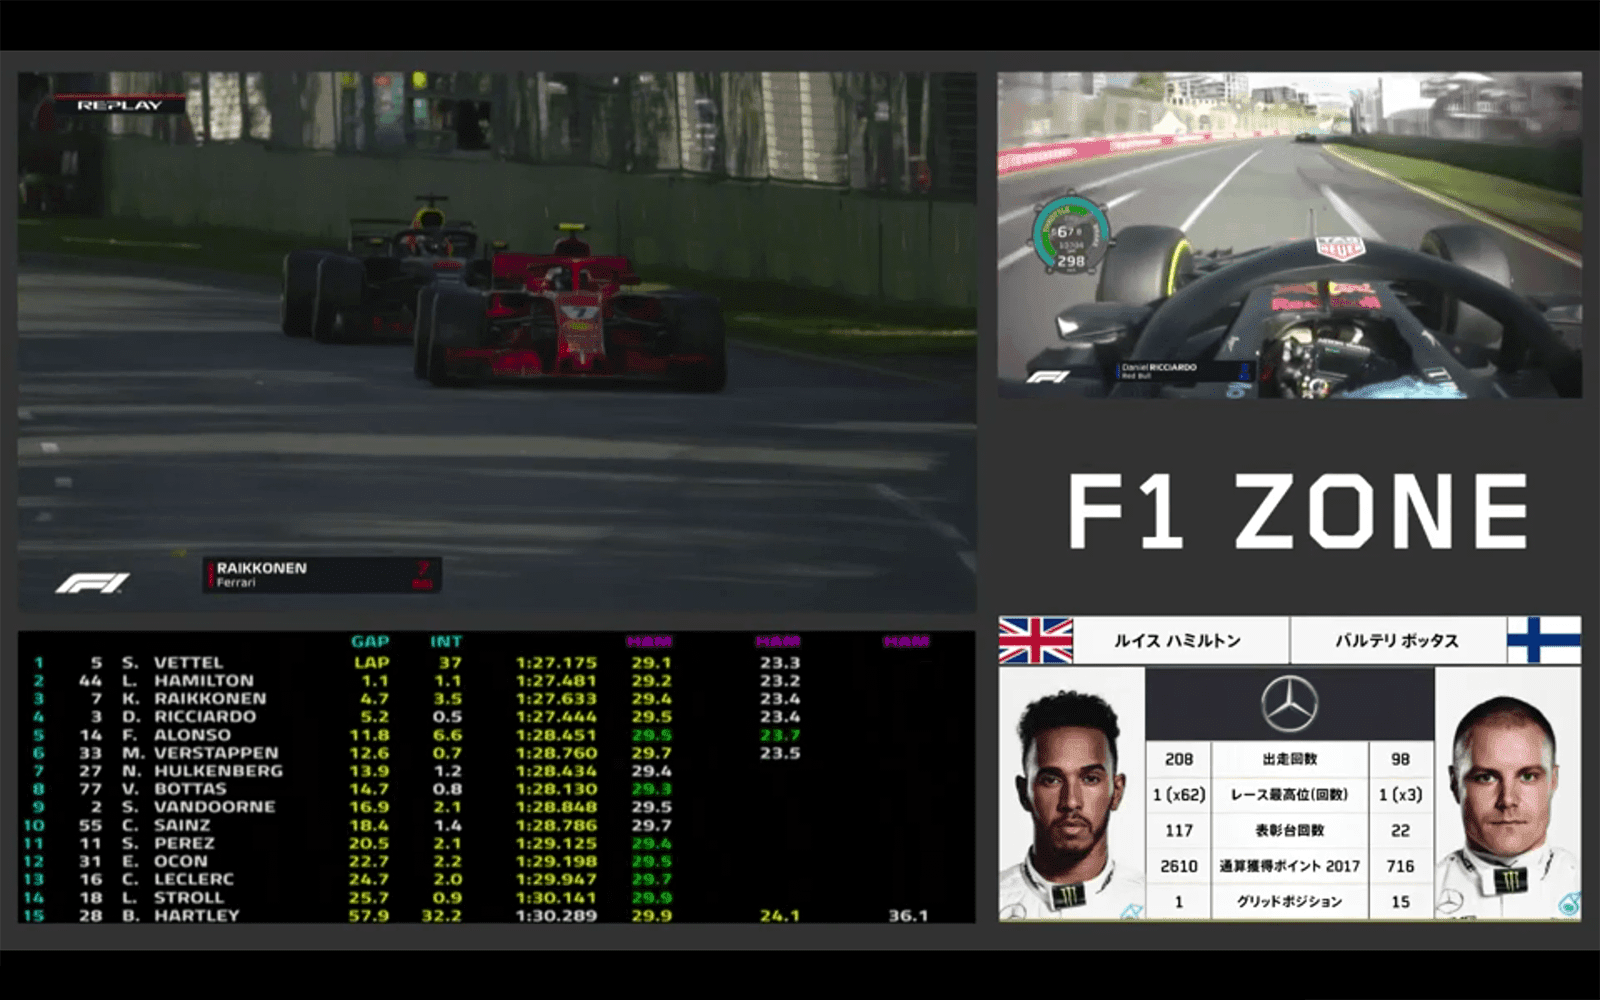 F1レポート メイン中継画面とオンボード タイミングモニタなど4つの映像を並べた新たな配信スタイルが登場したdaznでの18年シーズンのf1 視聴をチェック